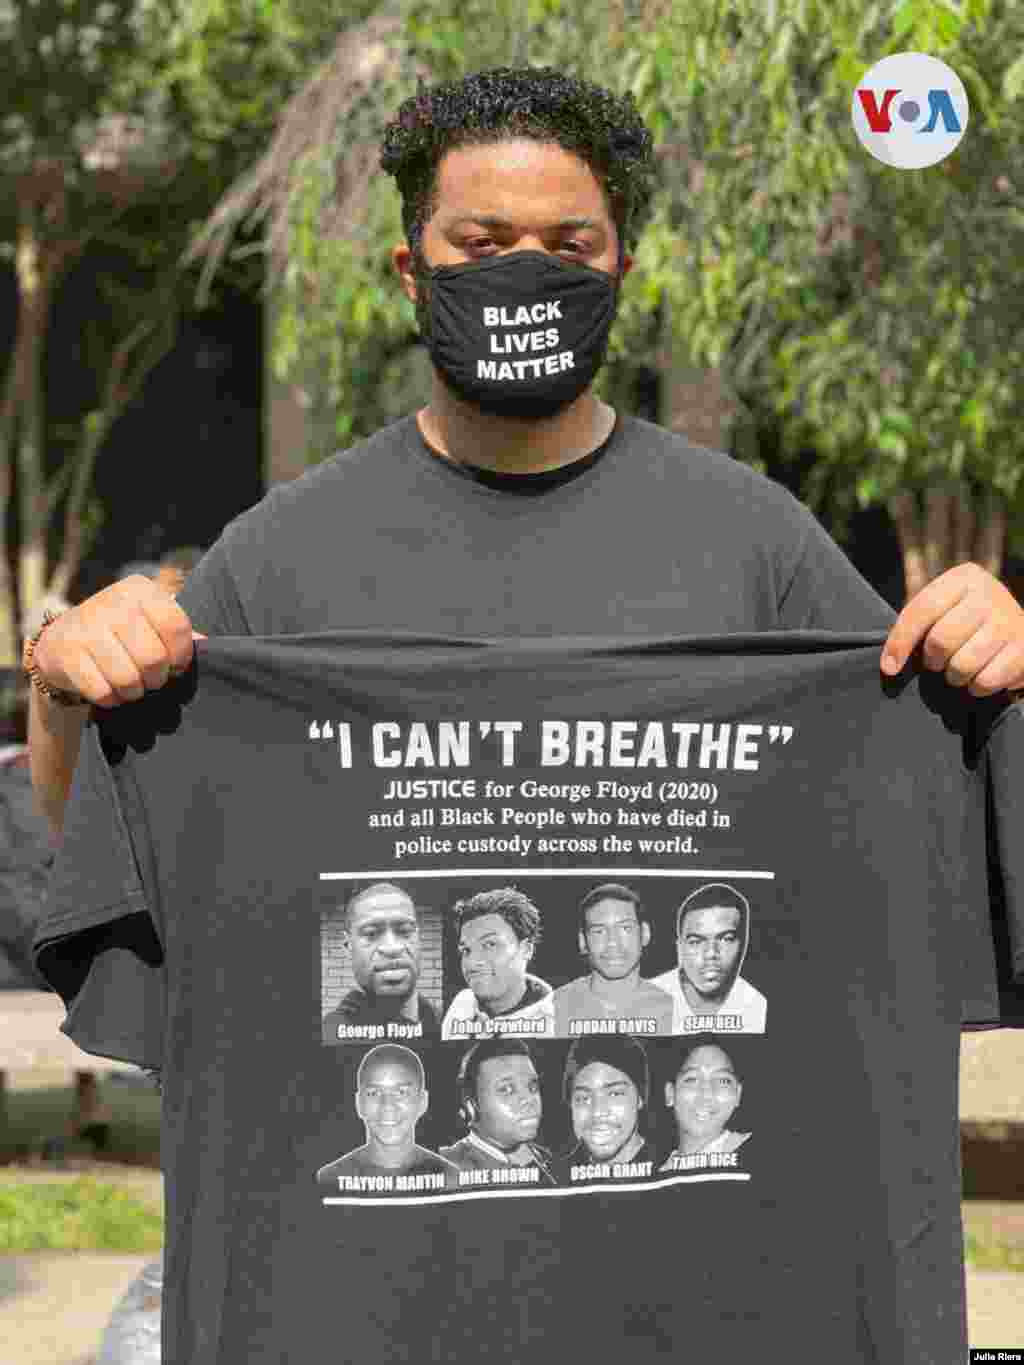 &quot;No puedo respirar&quot; la frase que han repetido varias v&#237;ctimas mortales del abuso policial en Estados Unidos, es vista en una camiseta mostrada por un manifestante que particip&#243; el s&#225;bado 6 de junio en las protestas en la capital de Estados Unidos.